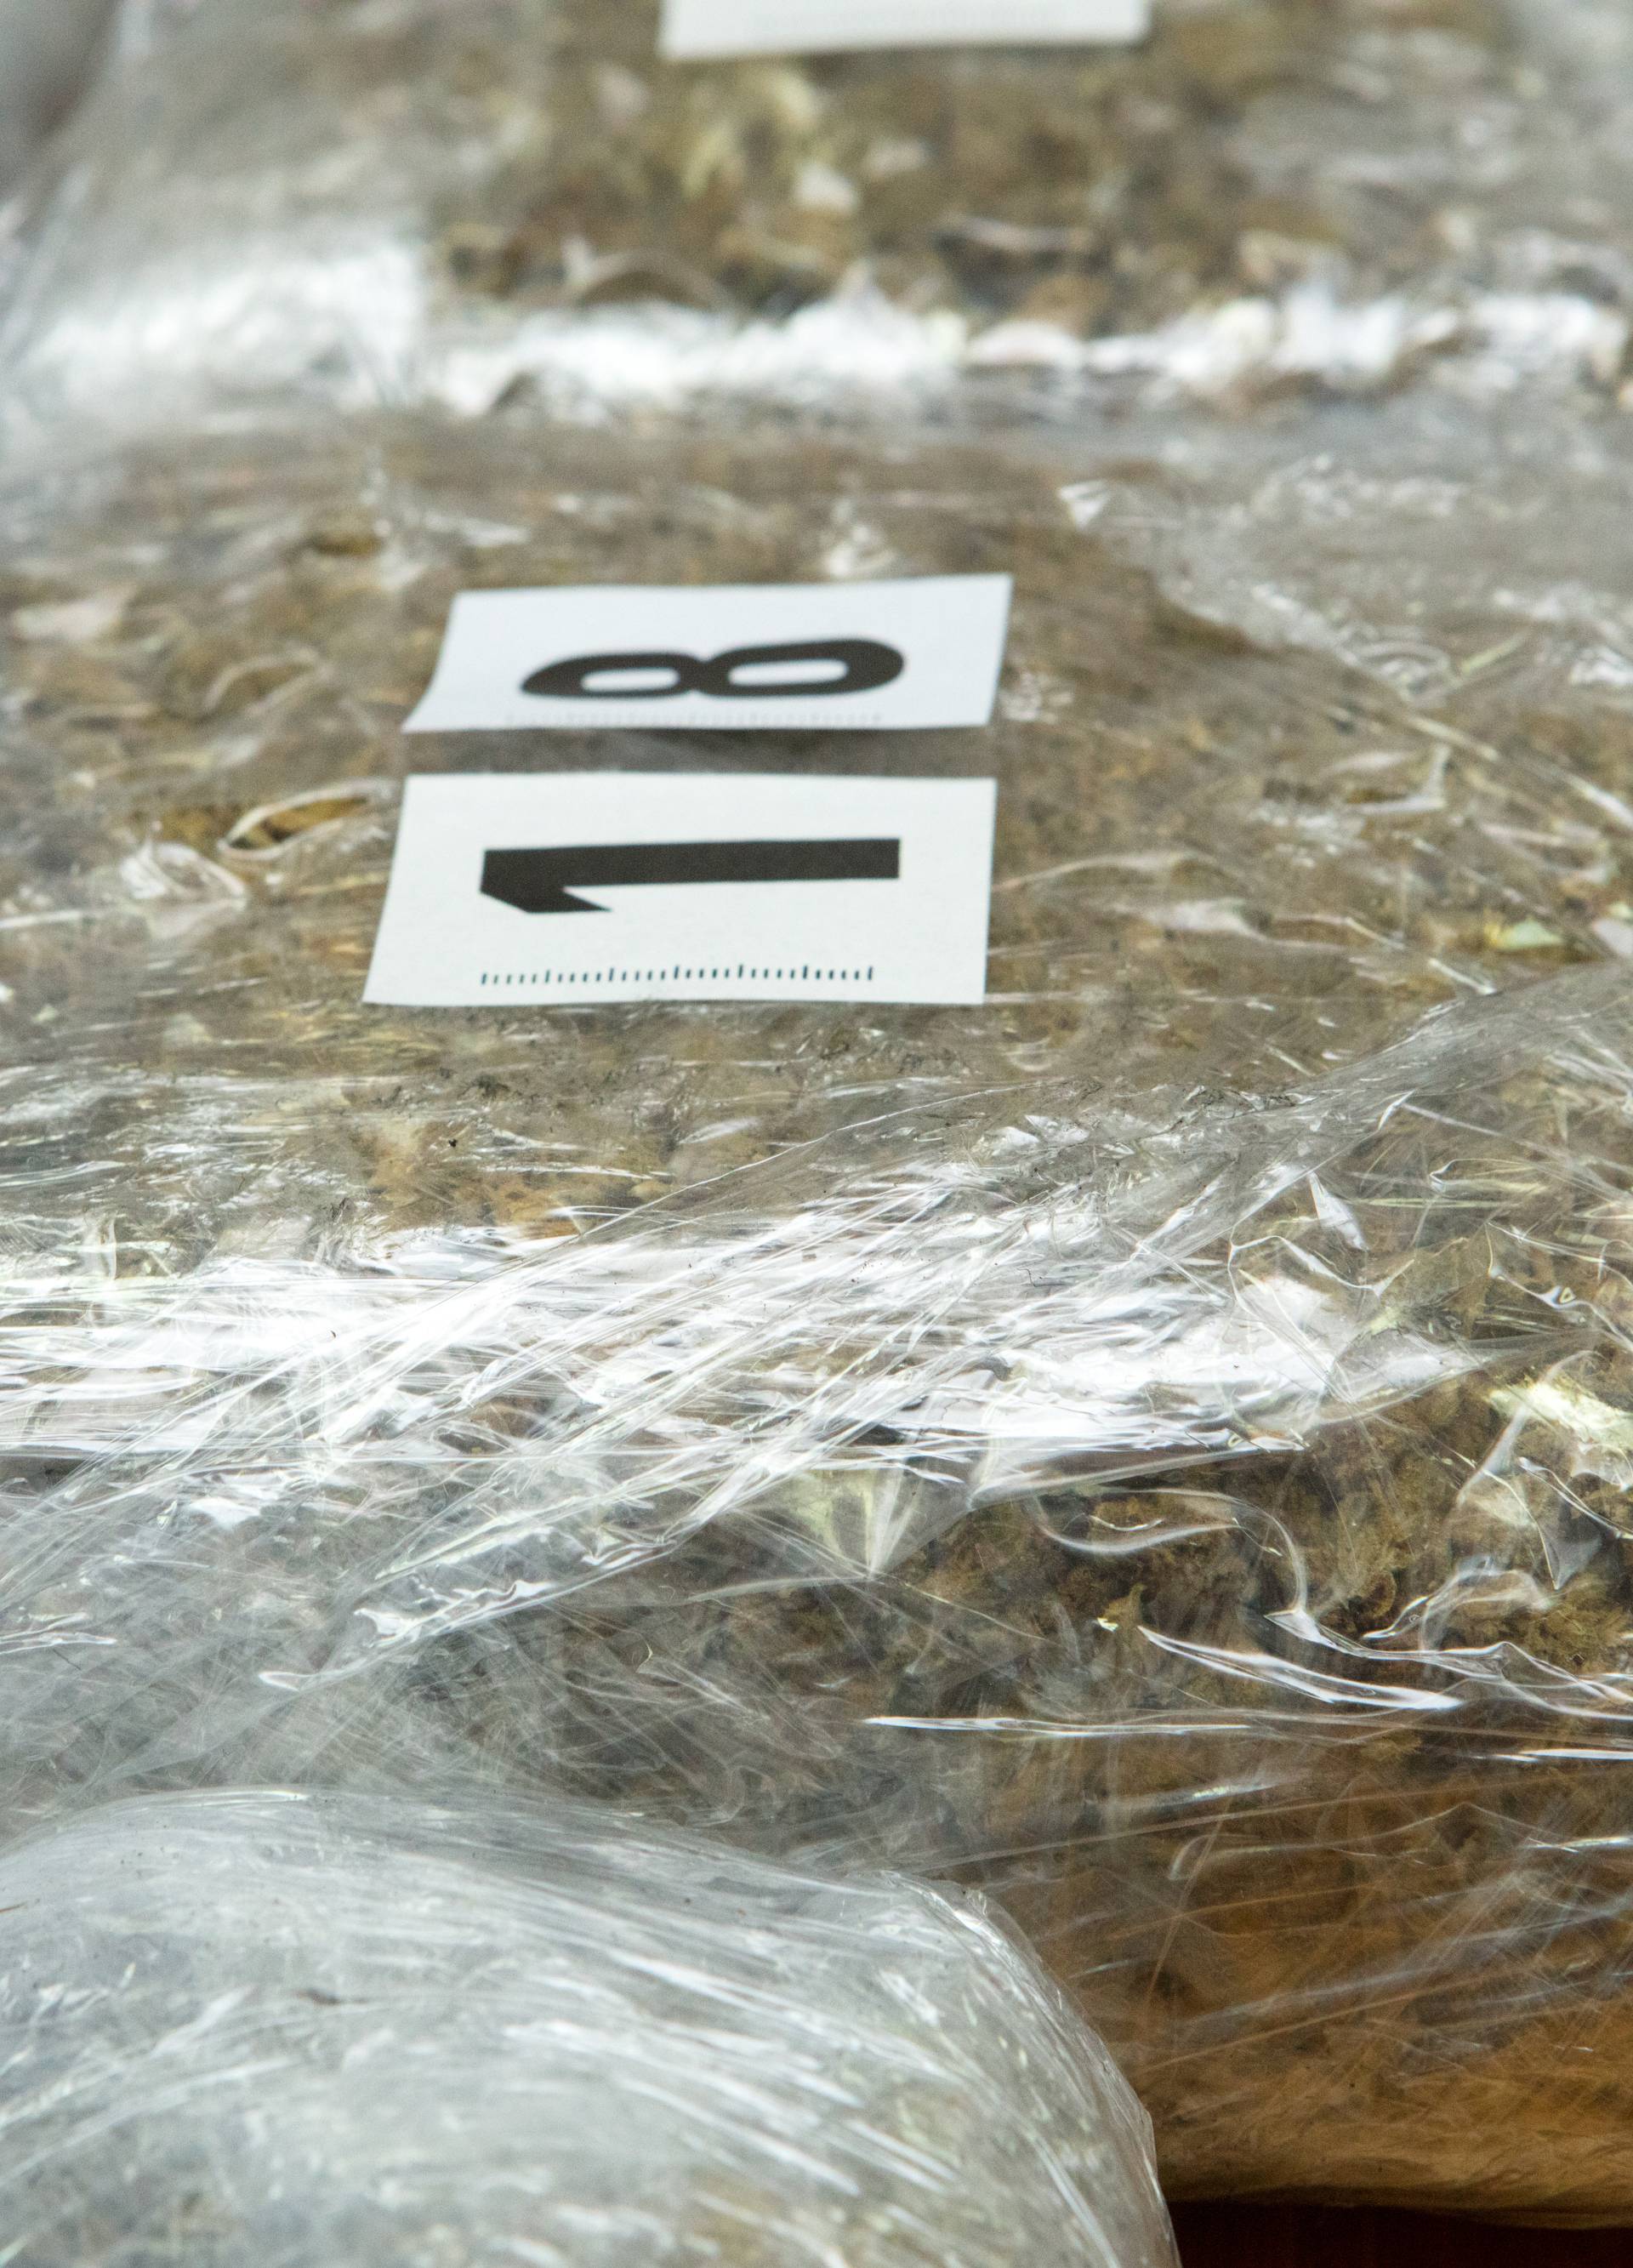 Mađaru su zaplijenili 34 paketa marihuane: Ukupno teški 17 kg